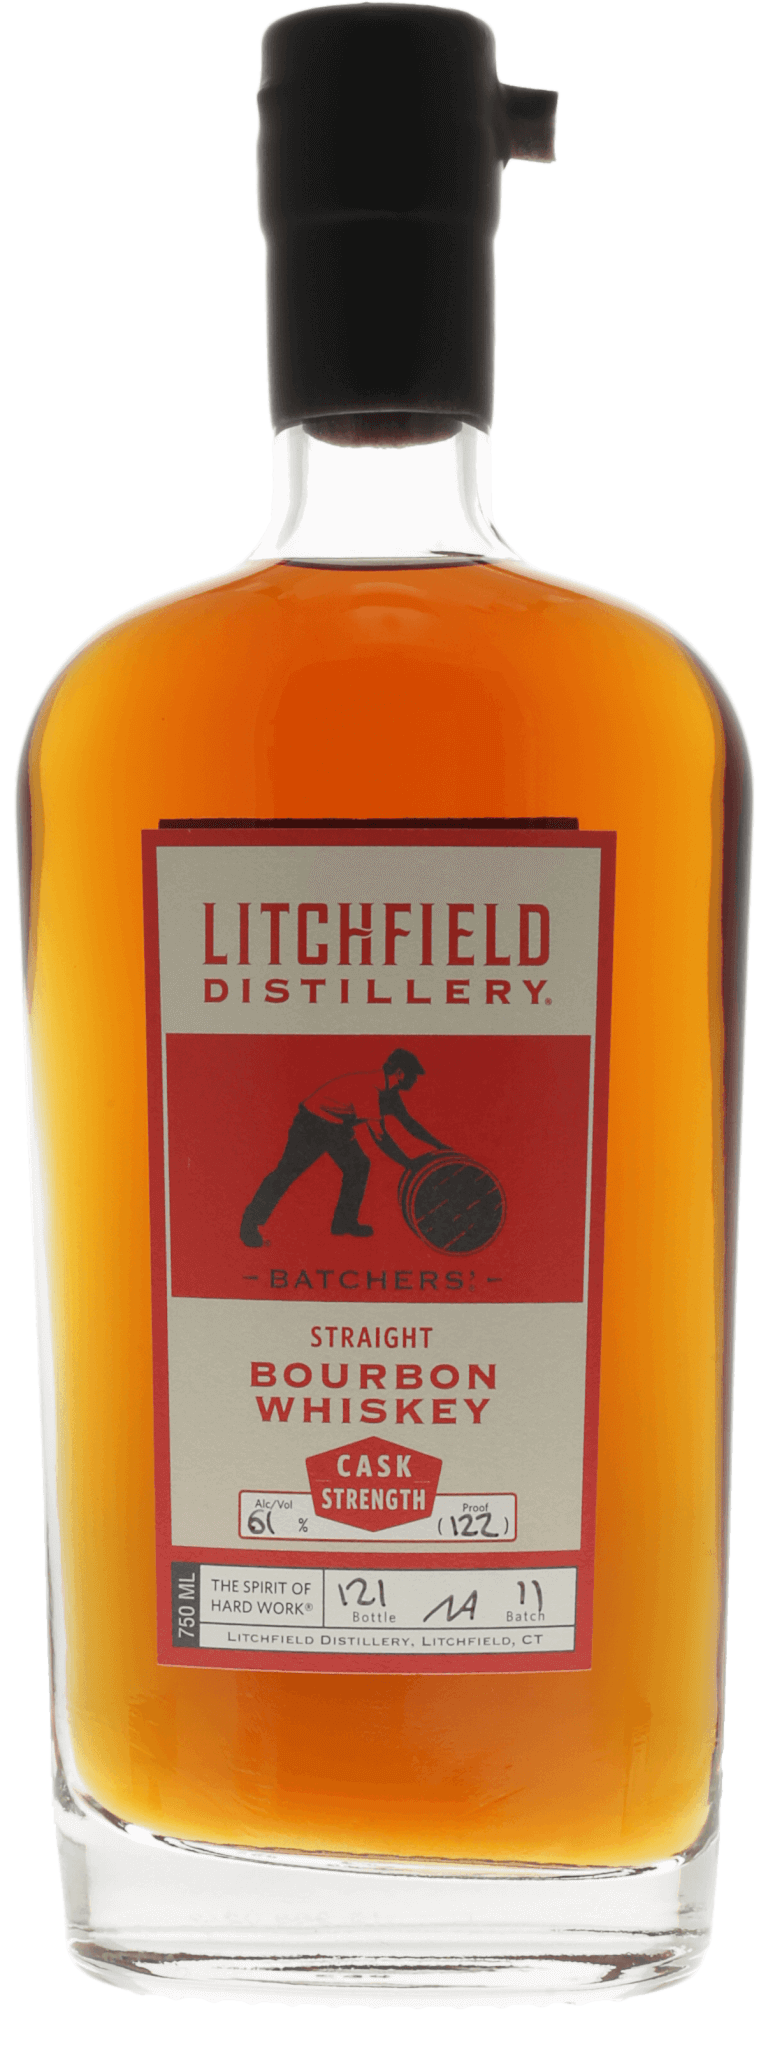 Litchfield Distillery Cask Strength Bourbon Whiskey